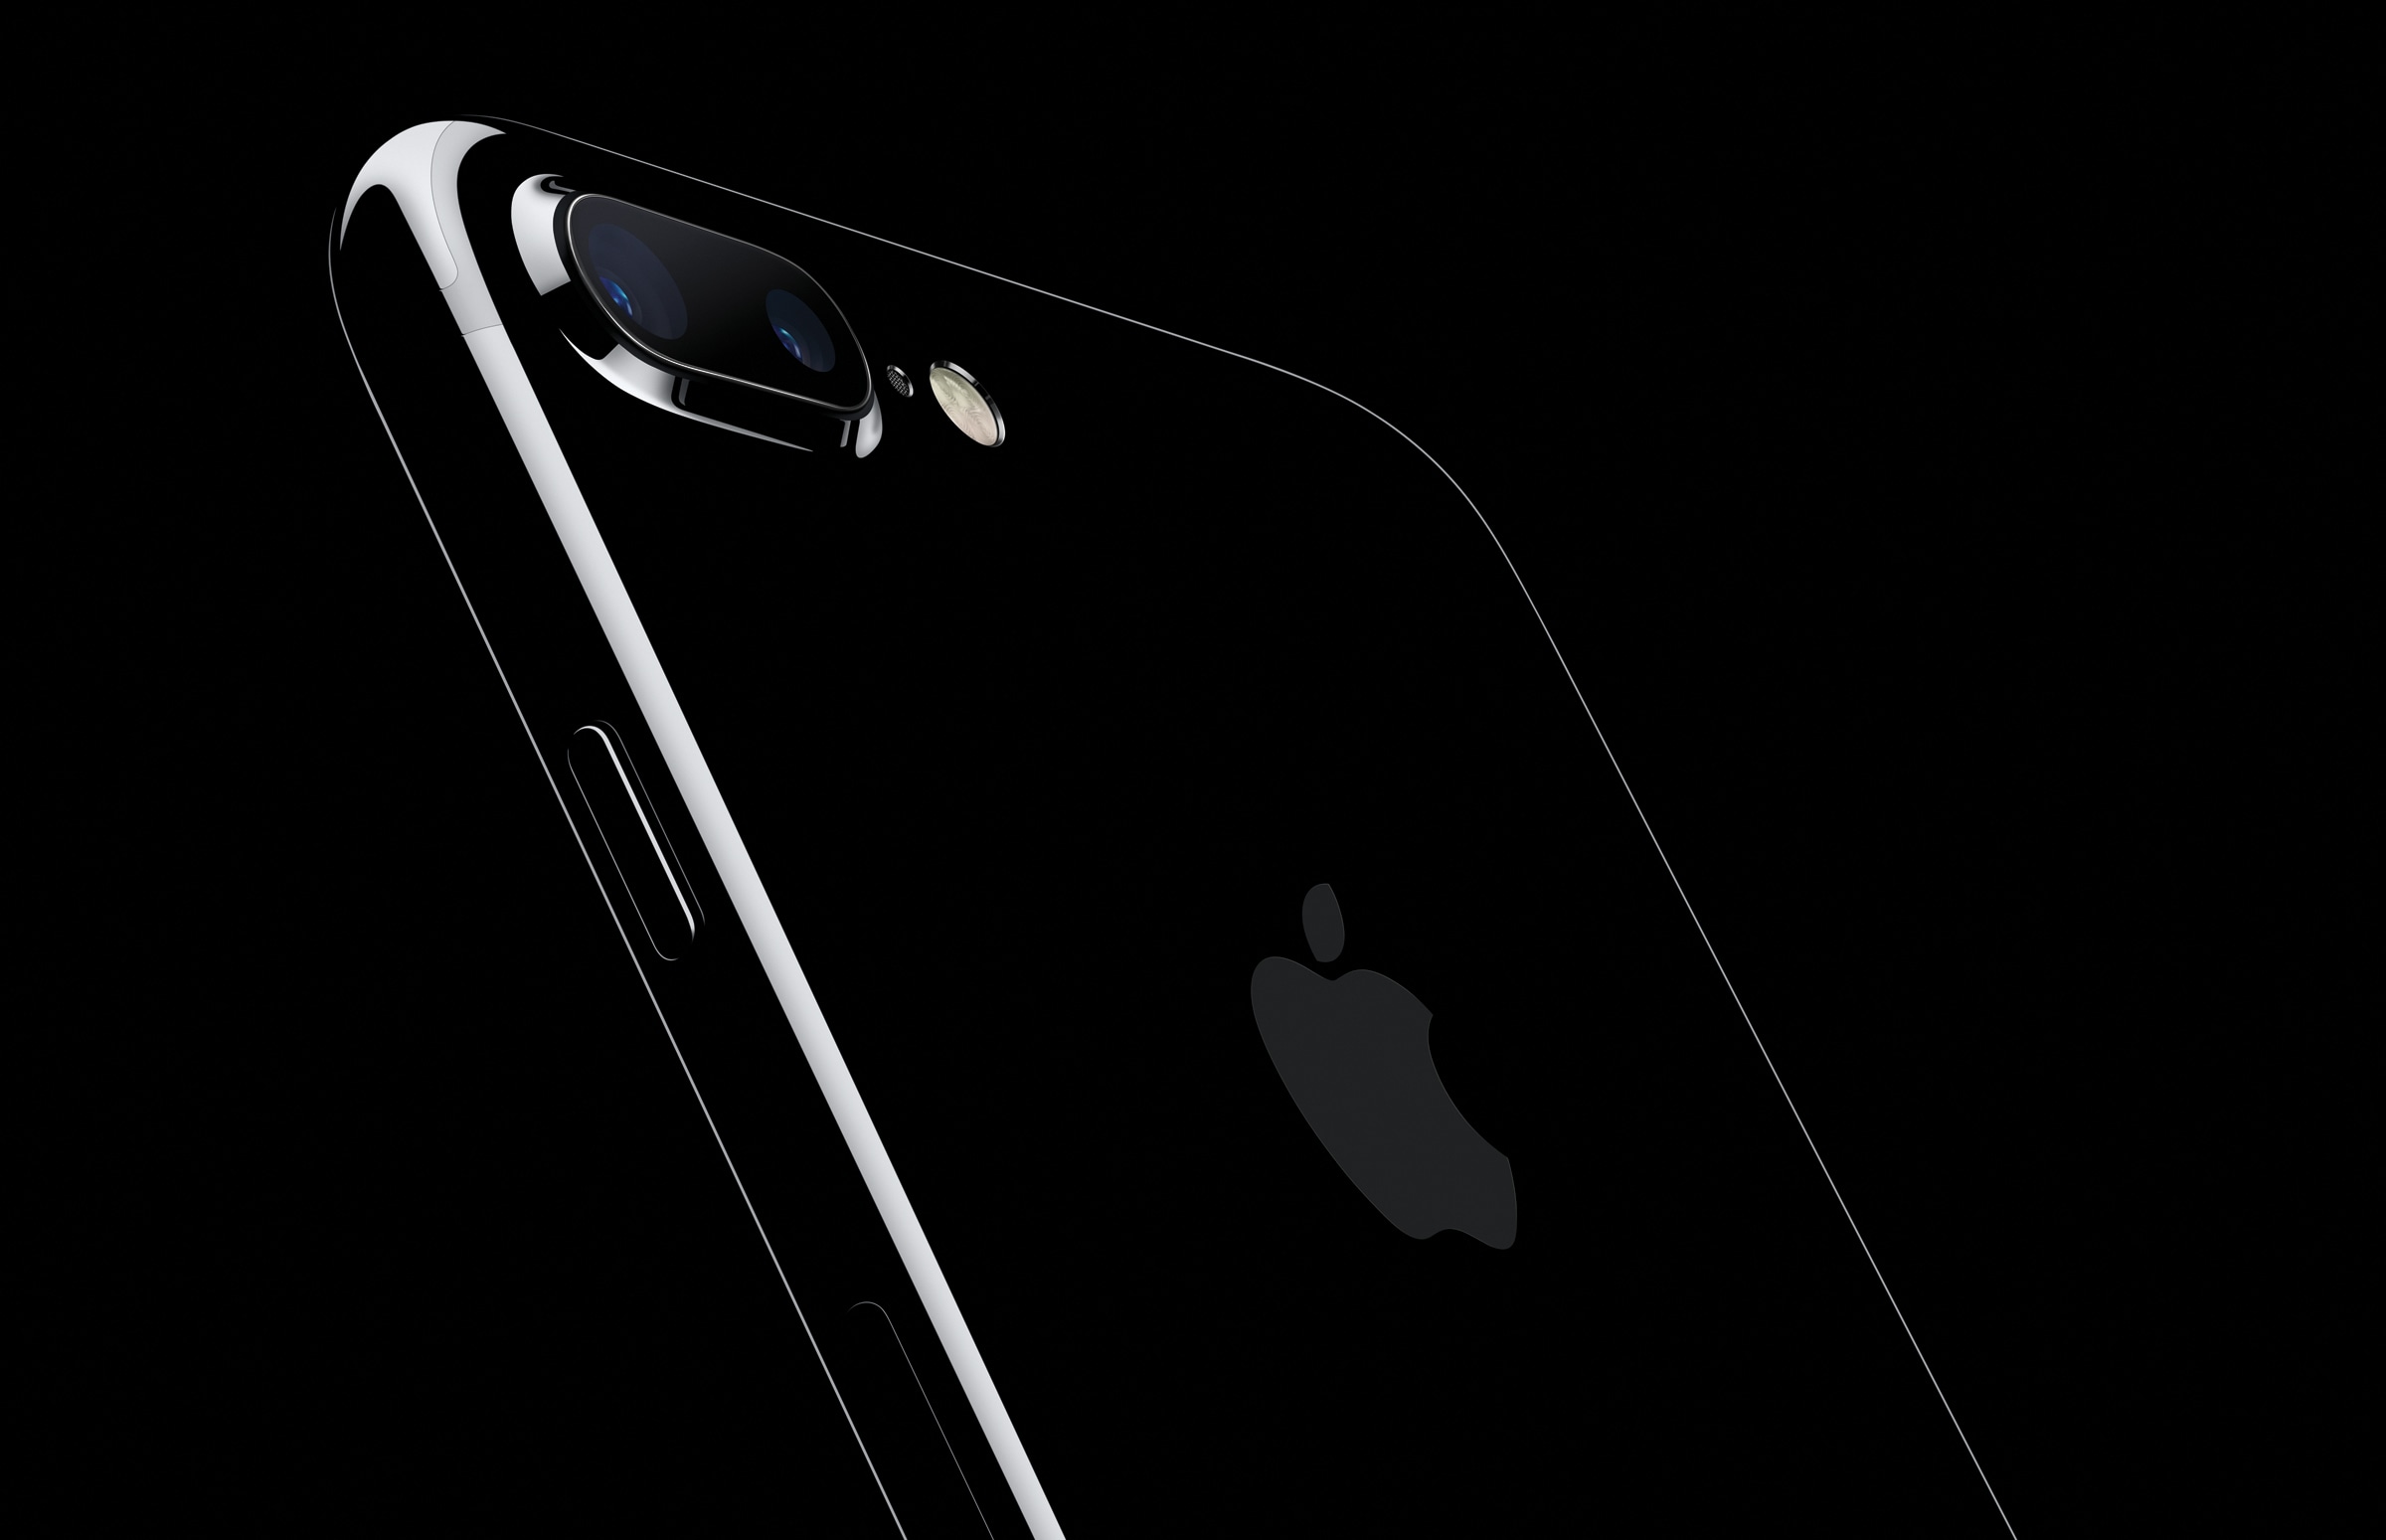 iPhone 7 Plus jet black tilted back on black background